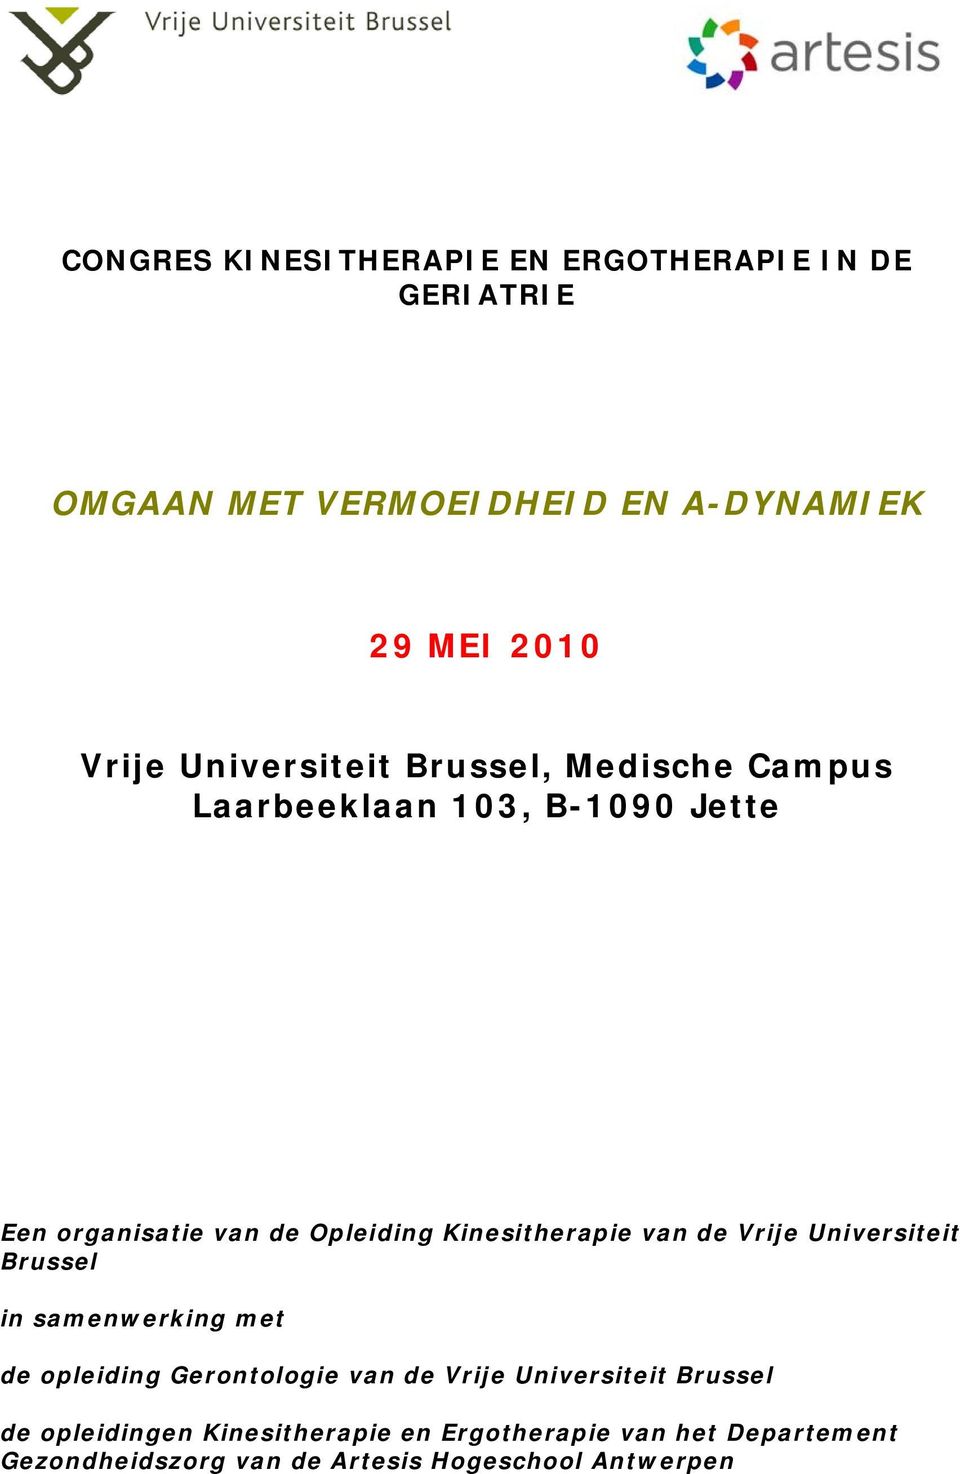 Kinesitherapie van de Vrije Universiteit Brussel in samenwerking met de opleiding Gerontologie van de Vrije